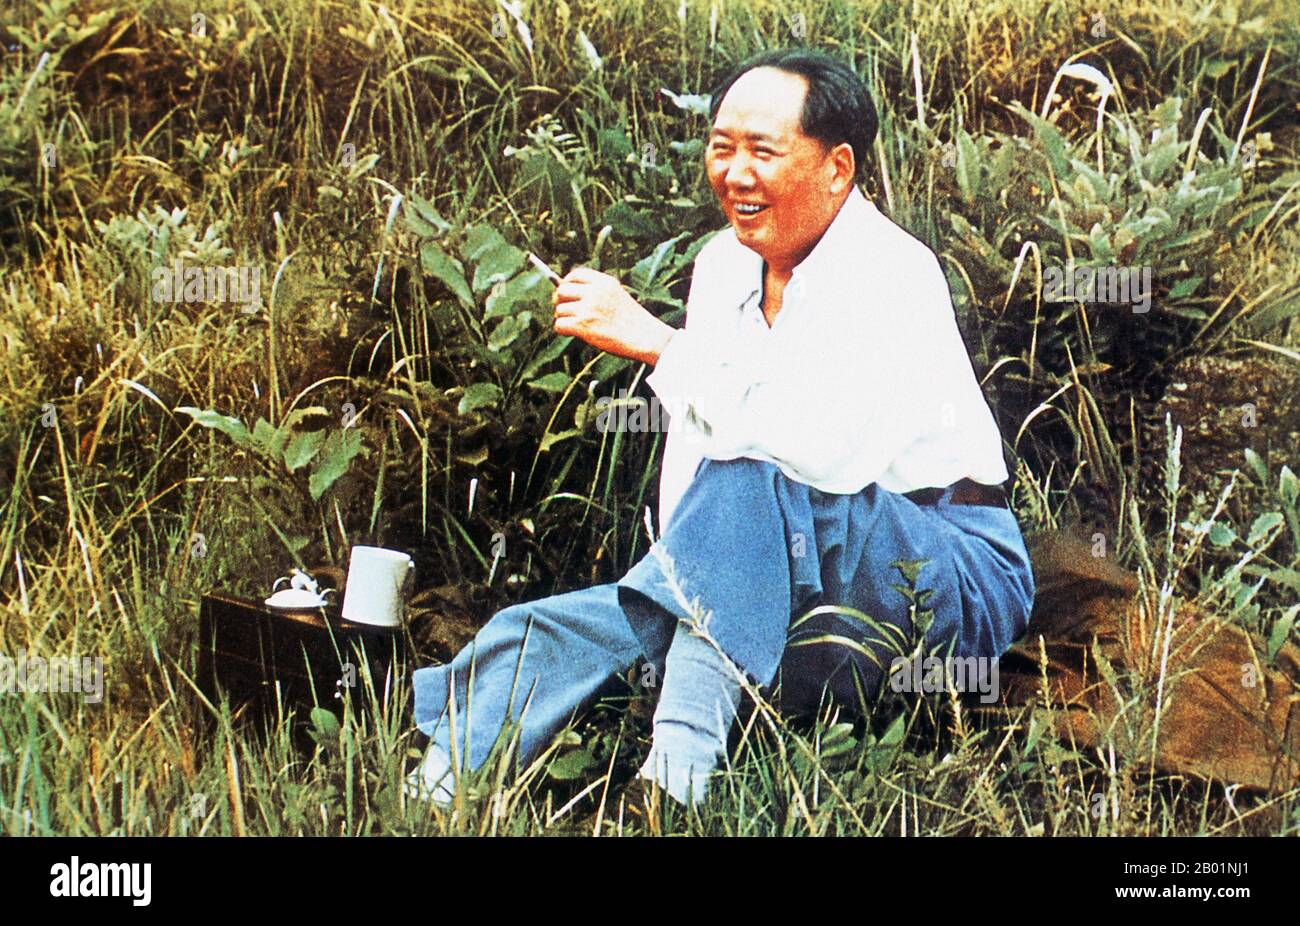 Cina: Mao Zedong (26 dicembre 1893 - 9 settembre 1976), presidente della Repubblica popolare cinese, a Hangzhou, 1954. Mao Zedong, traslitterato anche come Mao TSE-tung, è stato un rivoluzionario comunista cinese, stratega della guerriglia, autore, teorico politico e leader della rivoluzione cinese. Comunemente indicato come Presidente Mao, è stato l'architetto della Repubblica Popolare Cinese (RPC) dalla sua istituzione nel 1949, e ha mantenuto il controllo autoritario sulla nazione fino alla sua morte nel 1976. Foto Stock